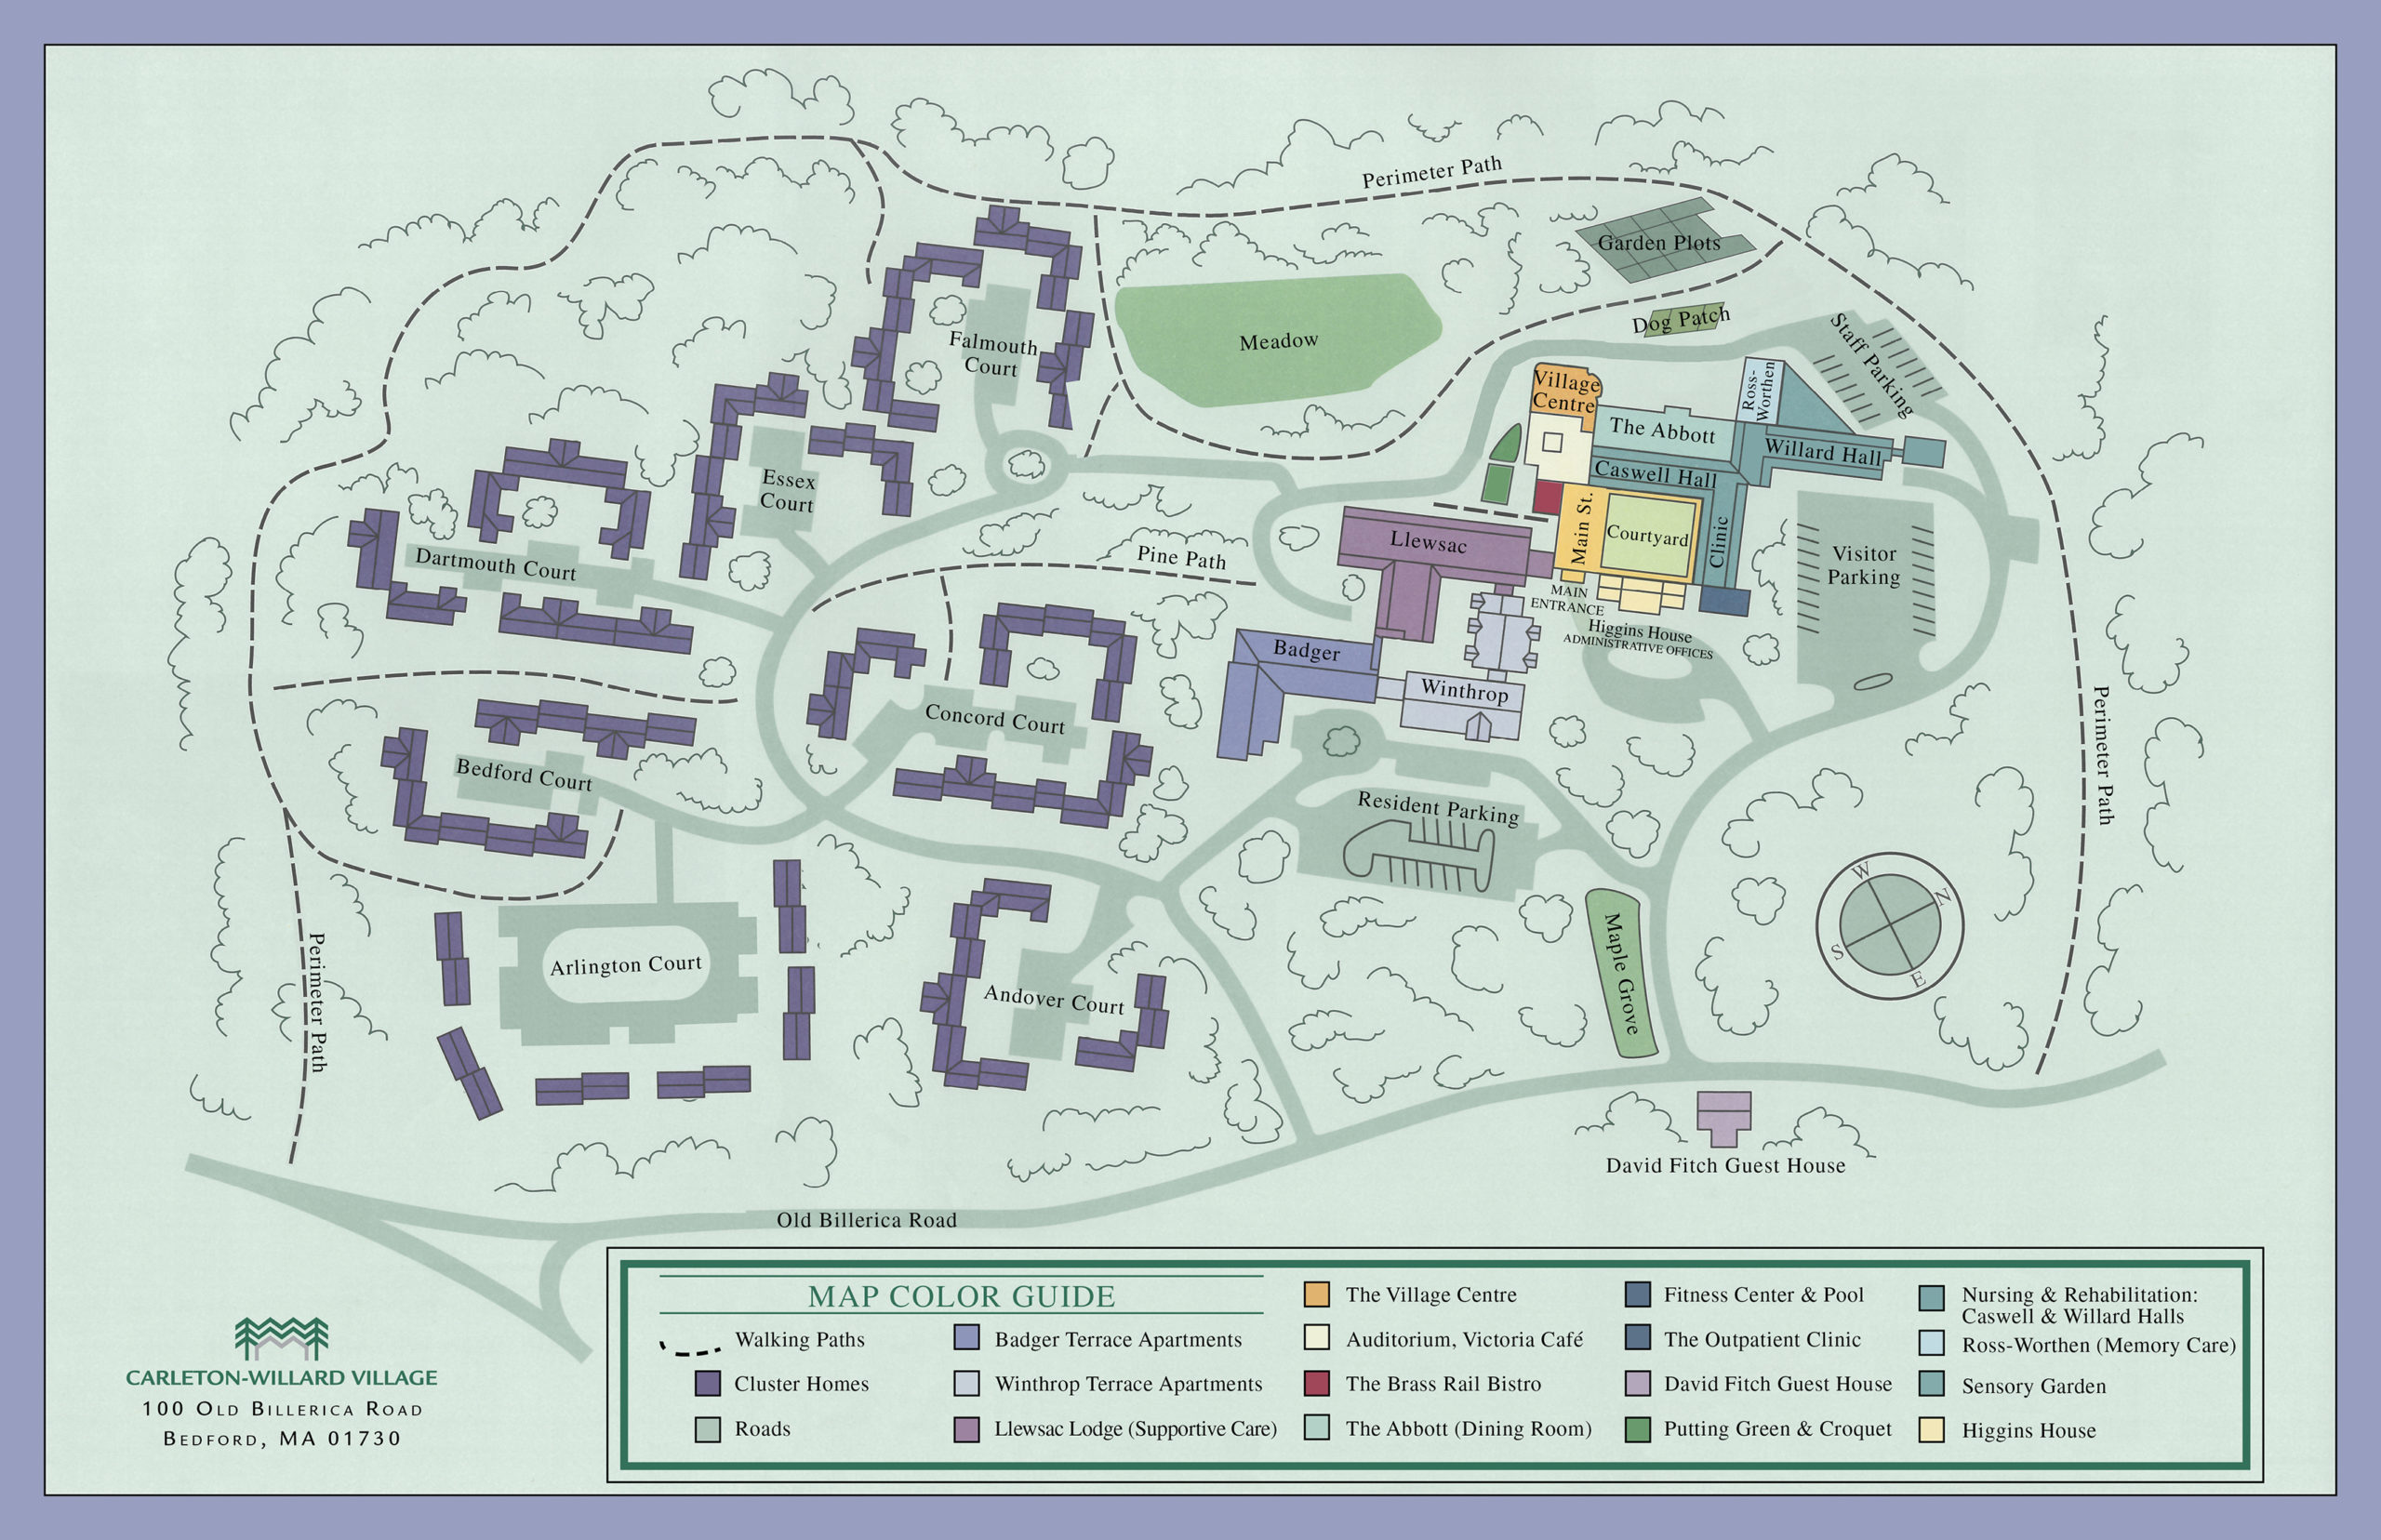 Carleton Willard Village campus map